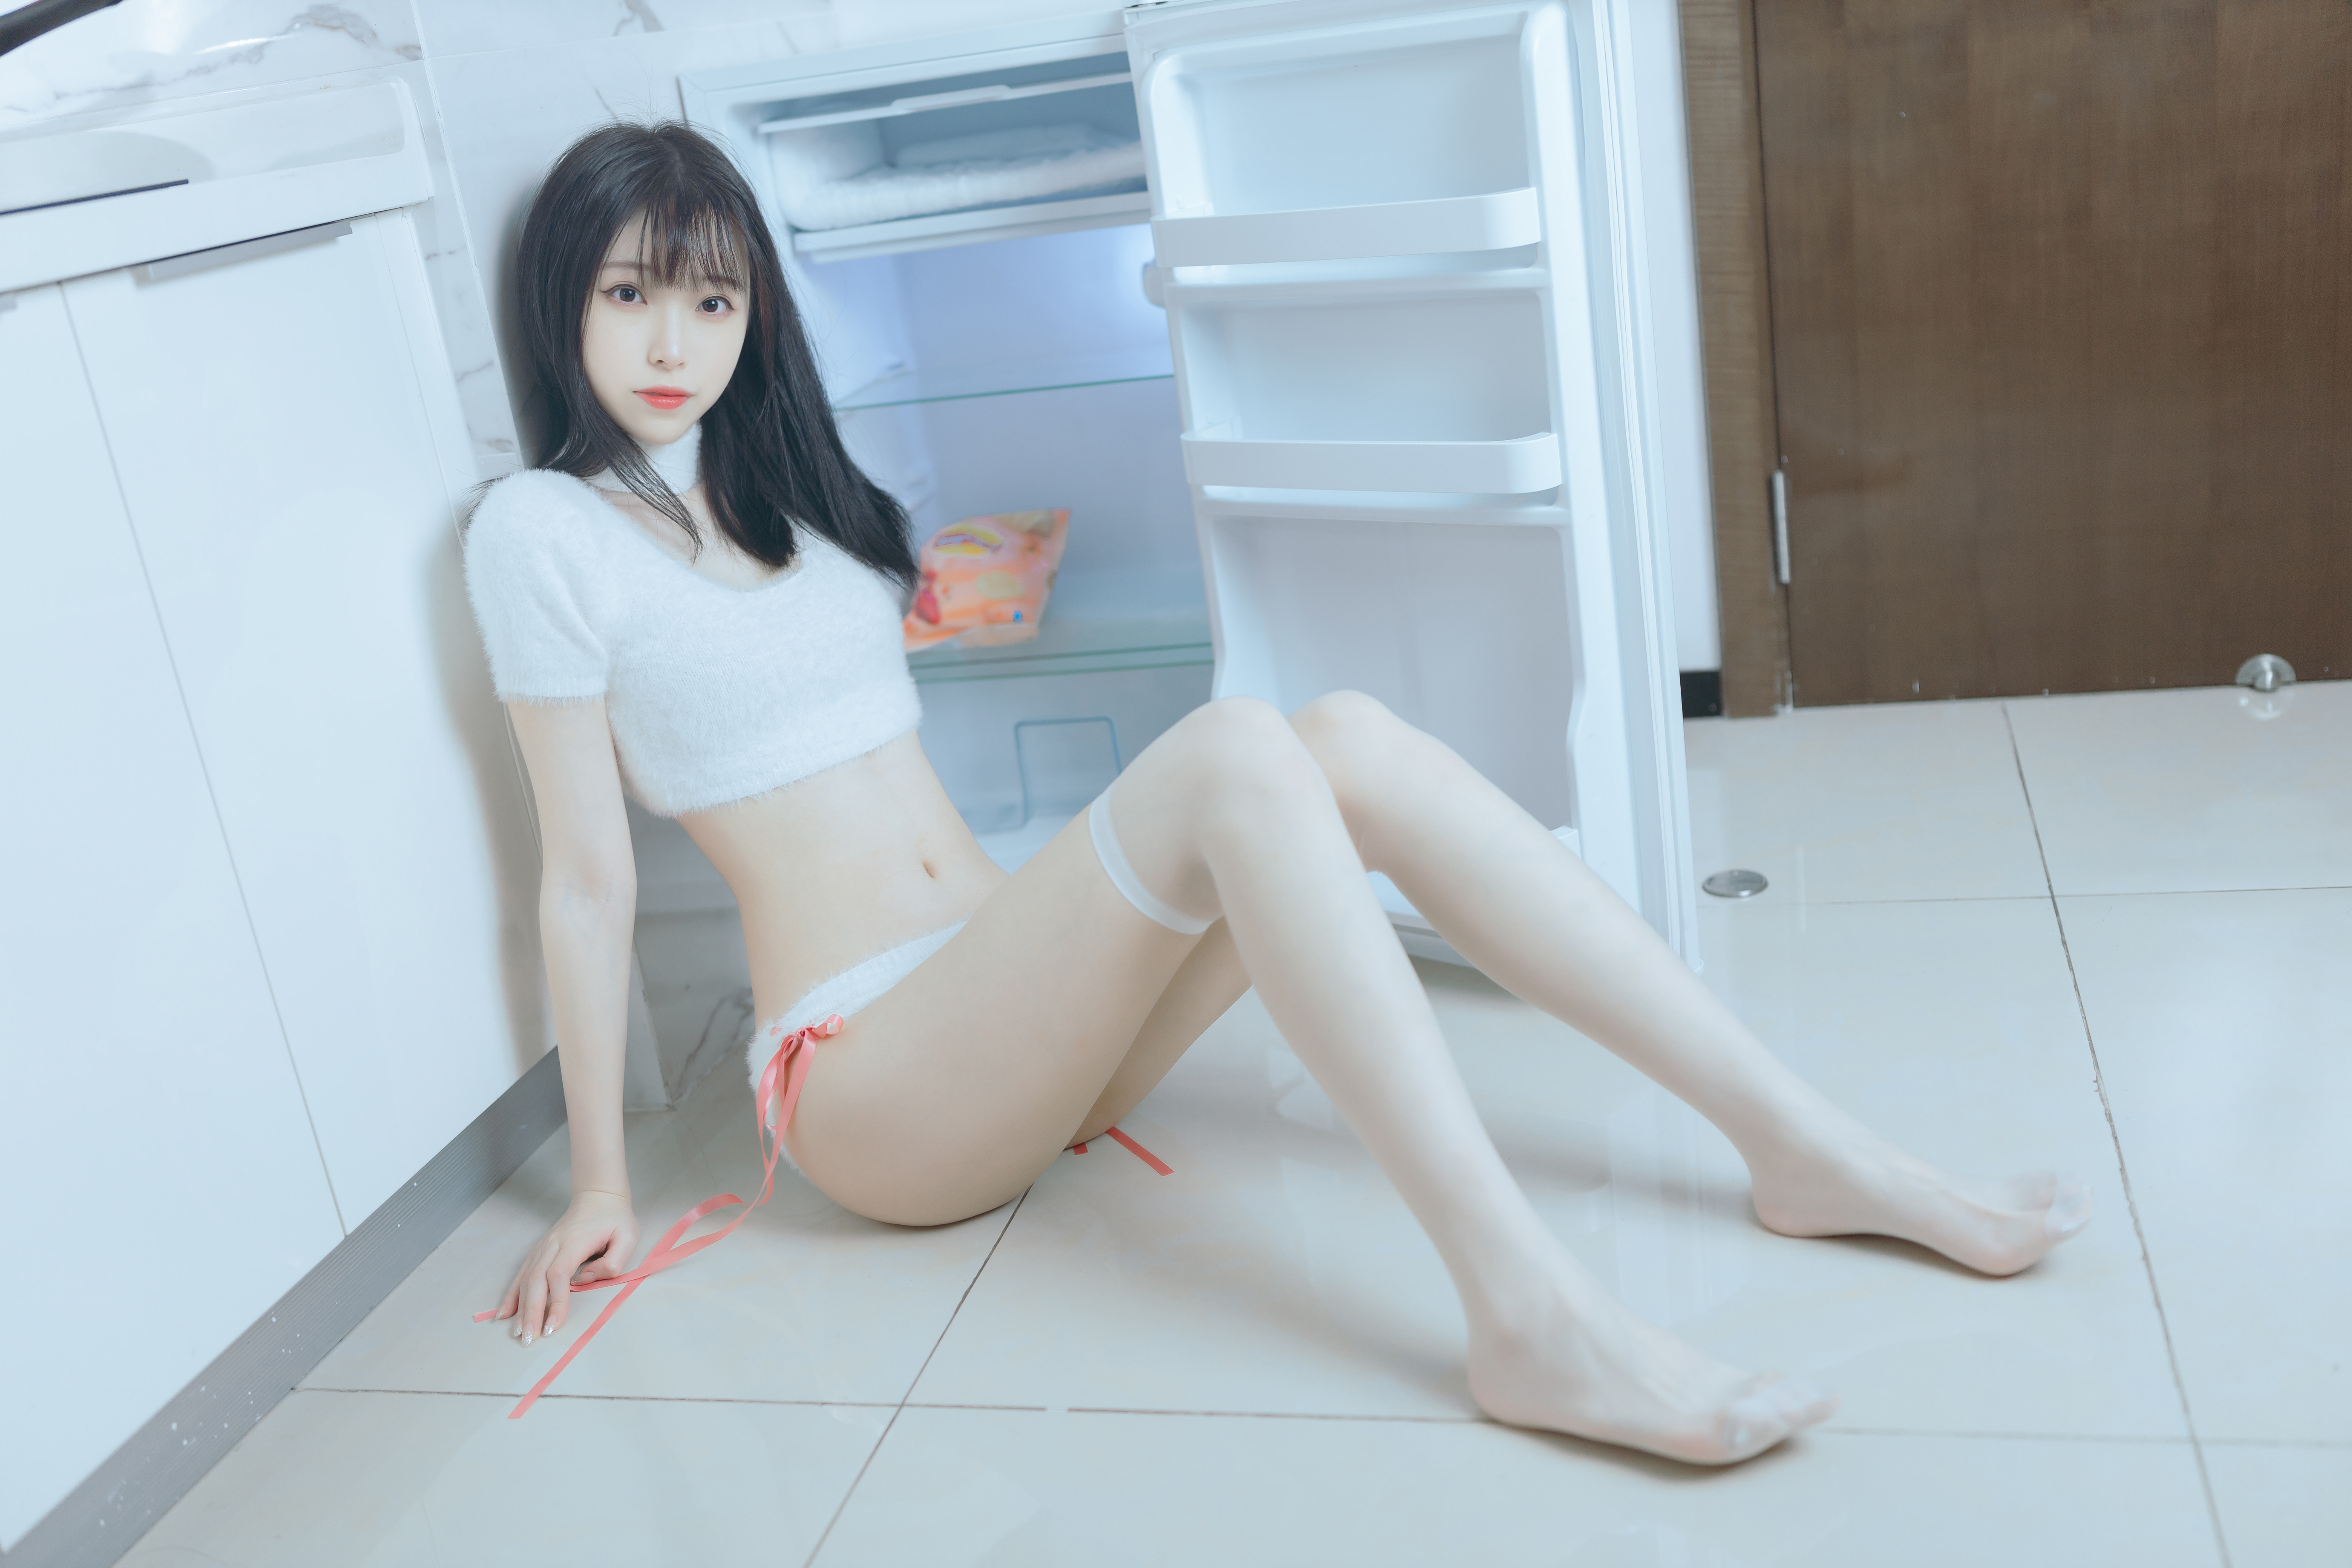 People 6240x4160 Xu Lan women sweater white stockings Asian